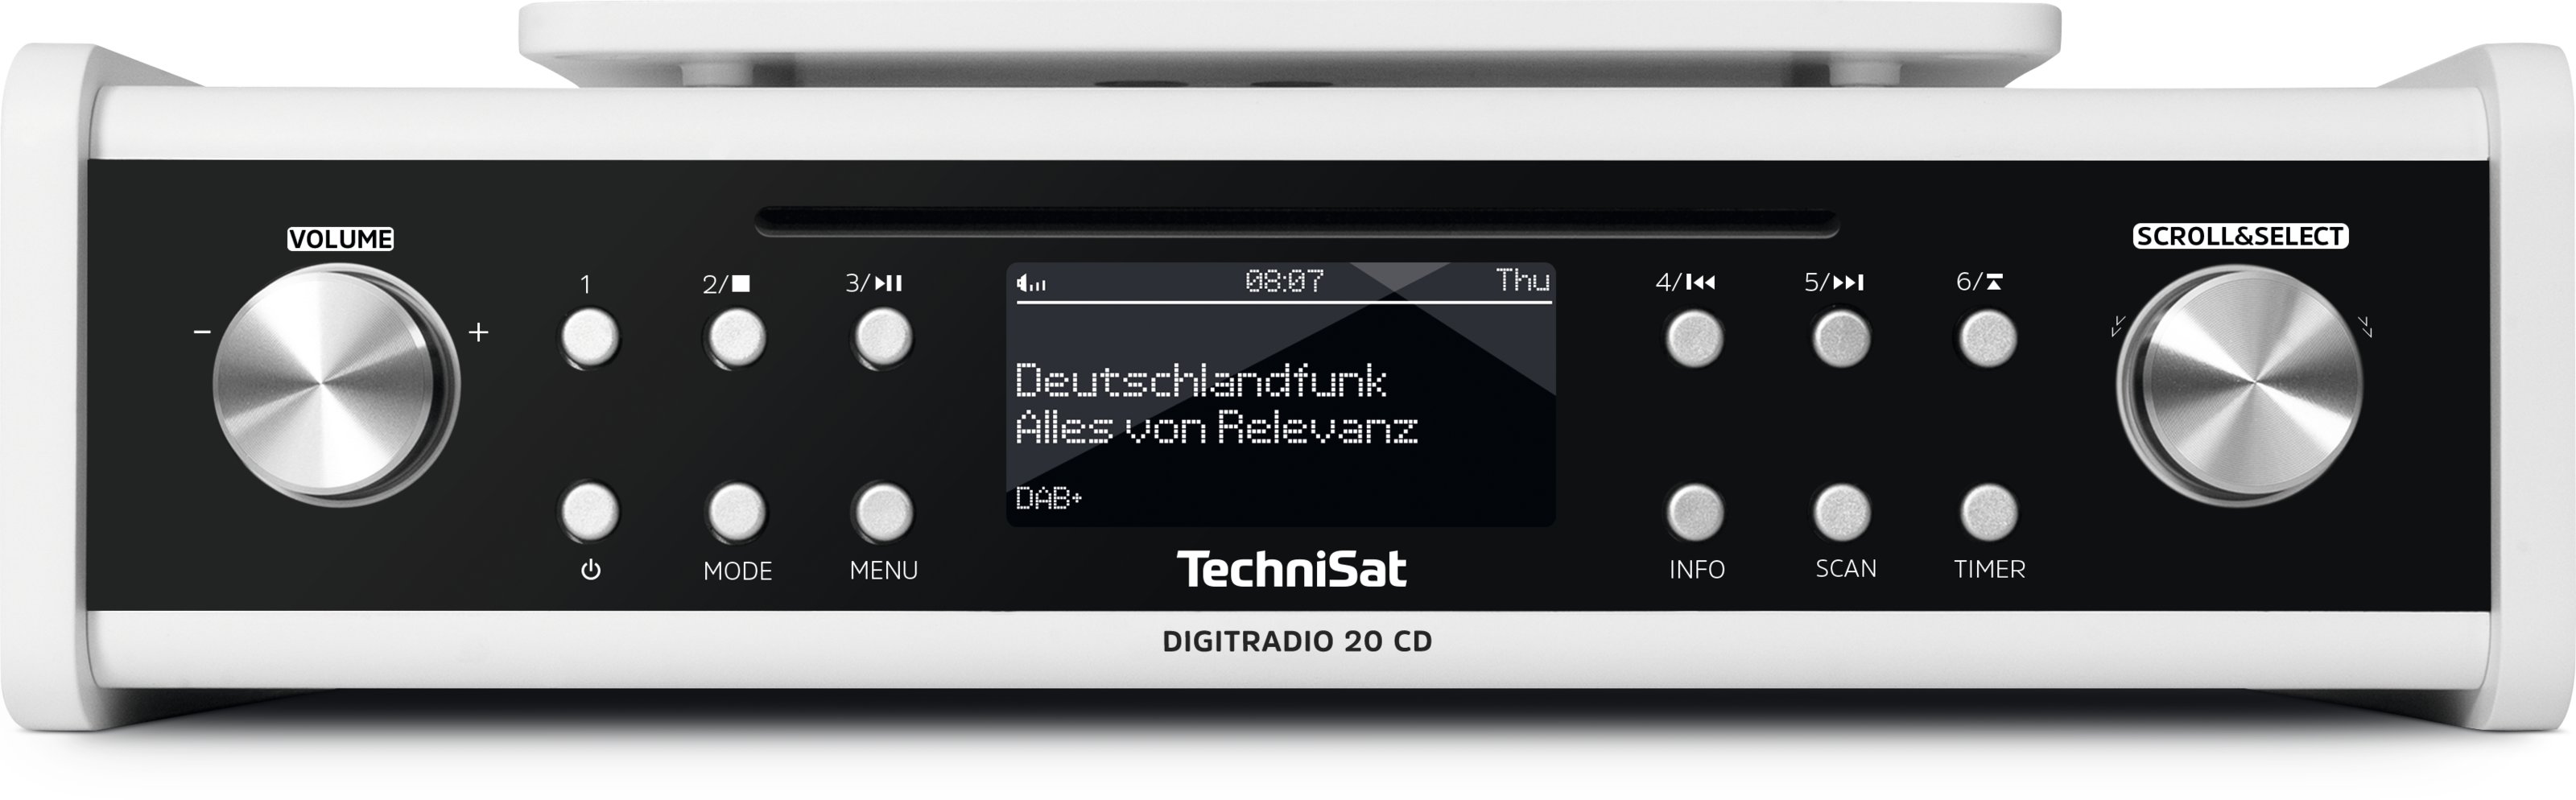 Küchenradio TechniSat weiss DIGITRADIO-20 CD